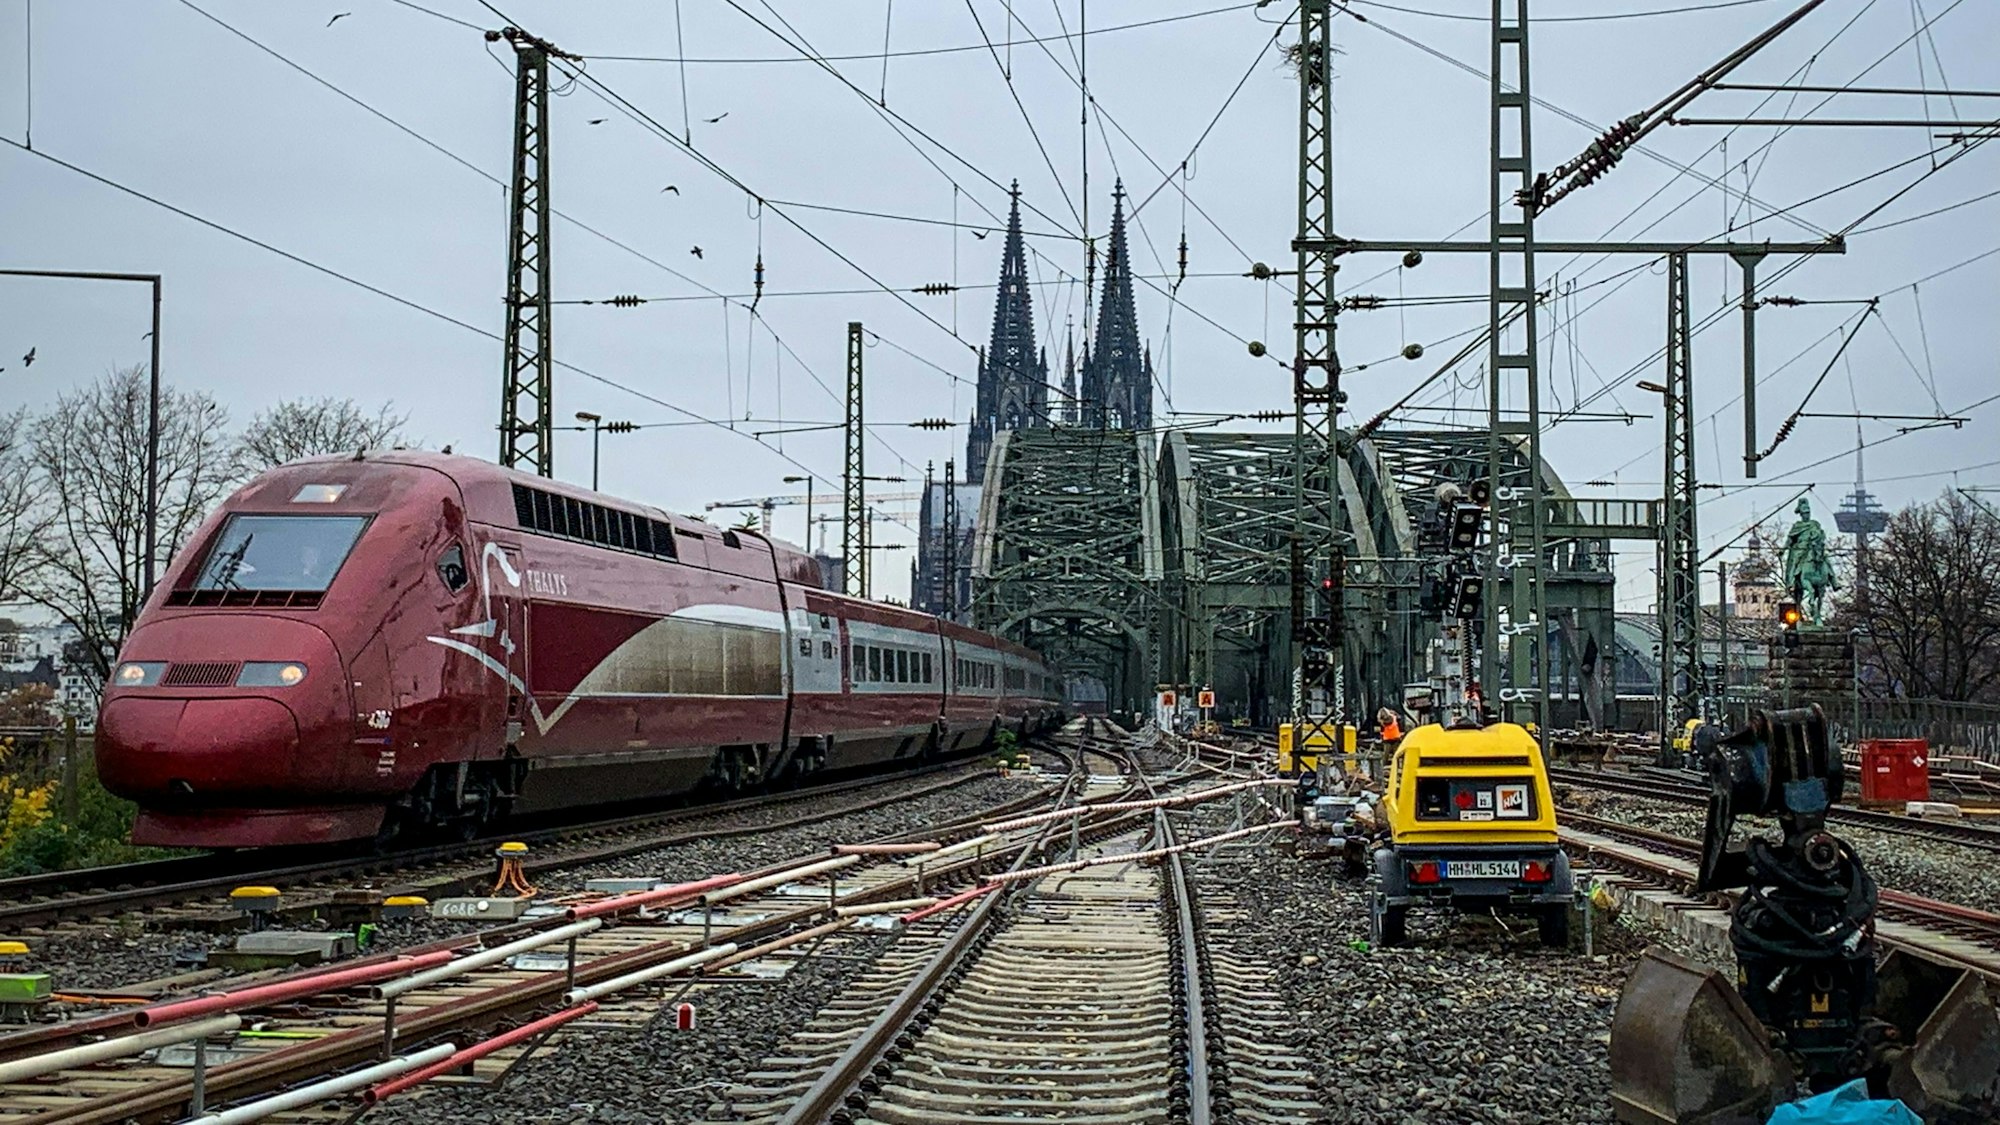 28.11.2022, Bauarbeiten an den Weichen im Bahnhof Köln Messe/Deutz sind zu sehen. Im Hintergrund der Dom und links im Bild ein roter Thalys-Zug.